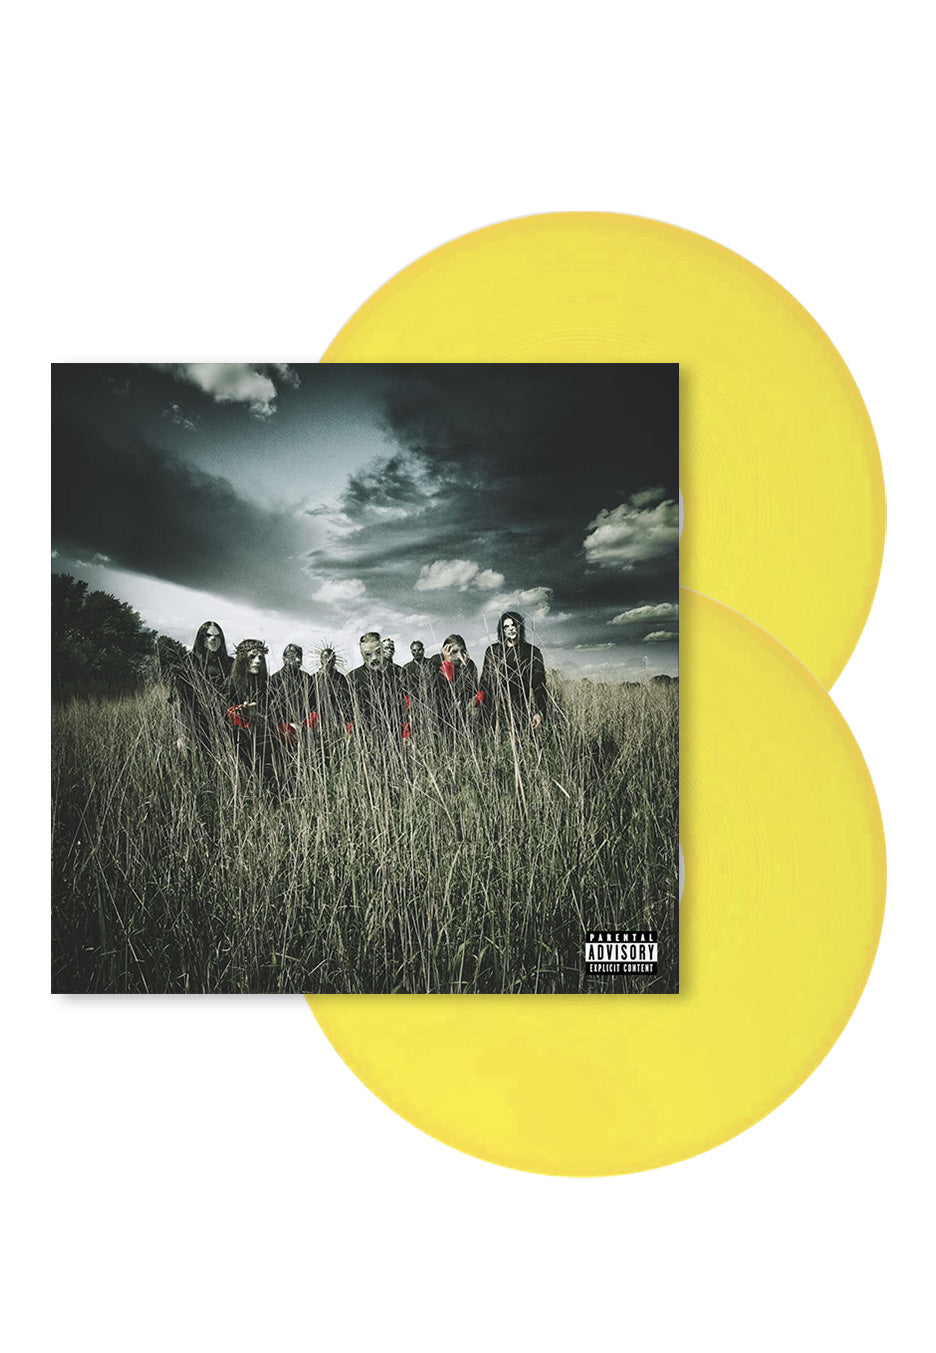 Slipknot - All Hope Is Gone Ltd. Yellow - Colored 2 Vinyl